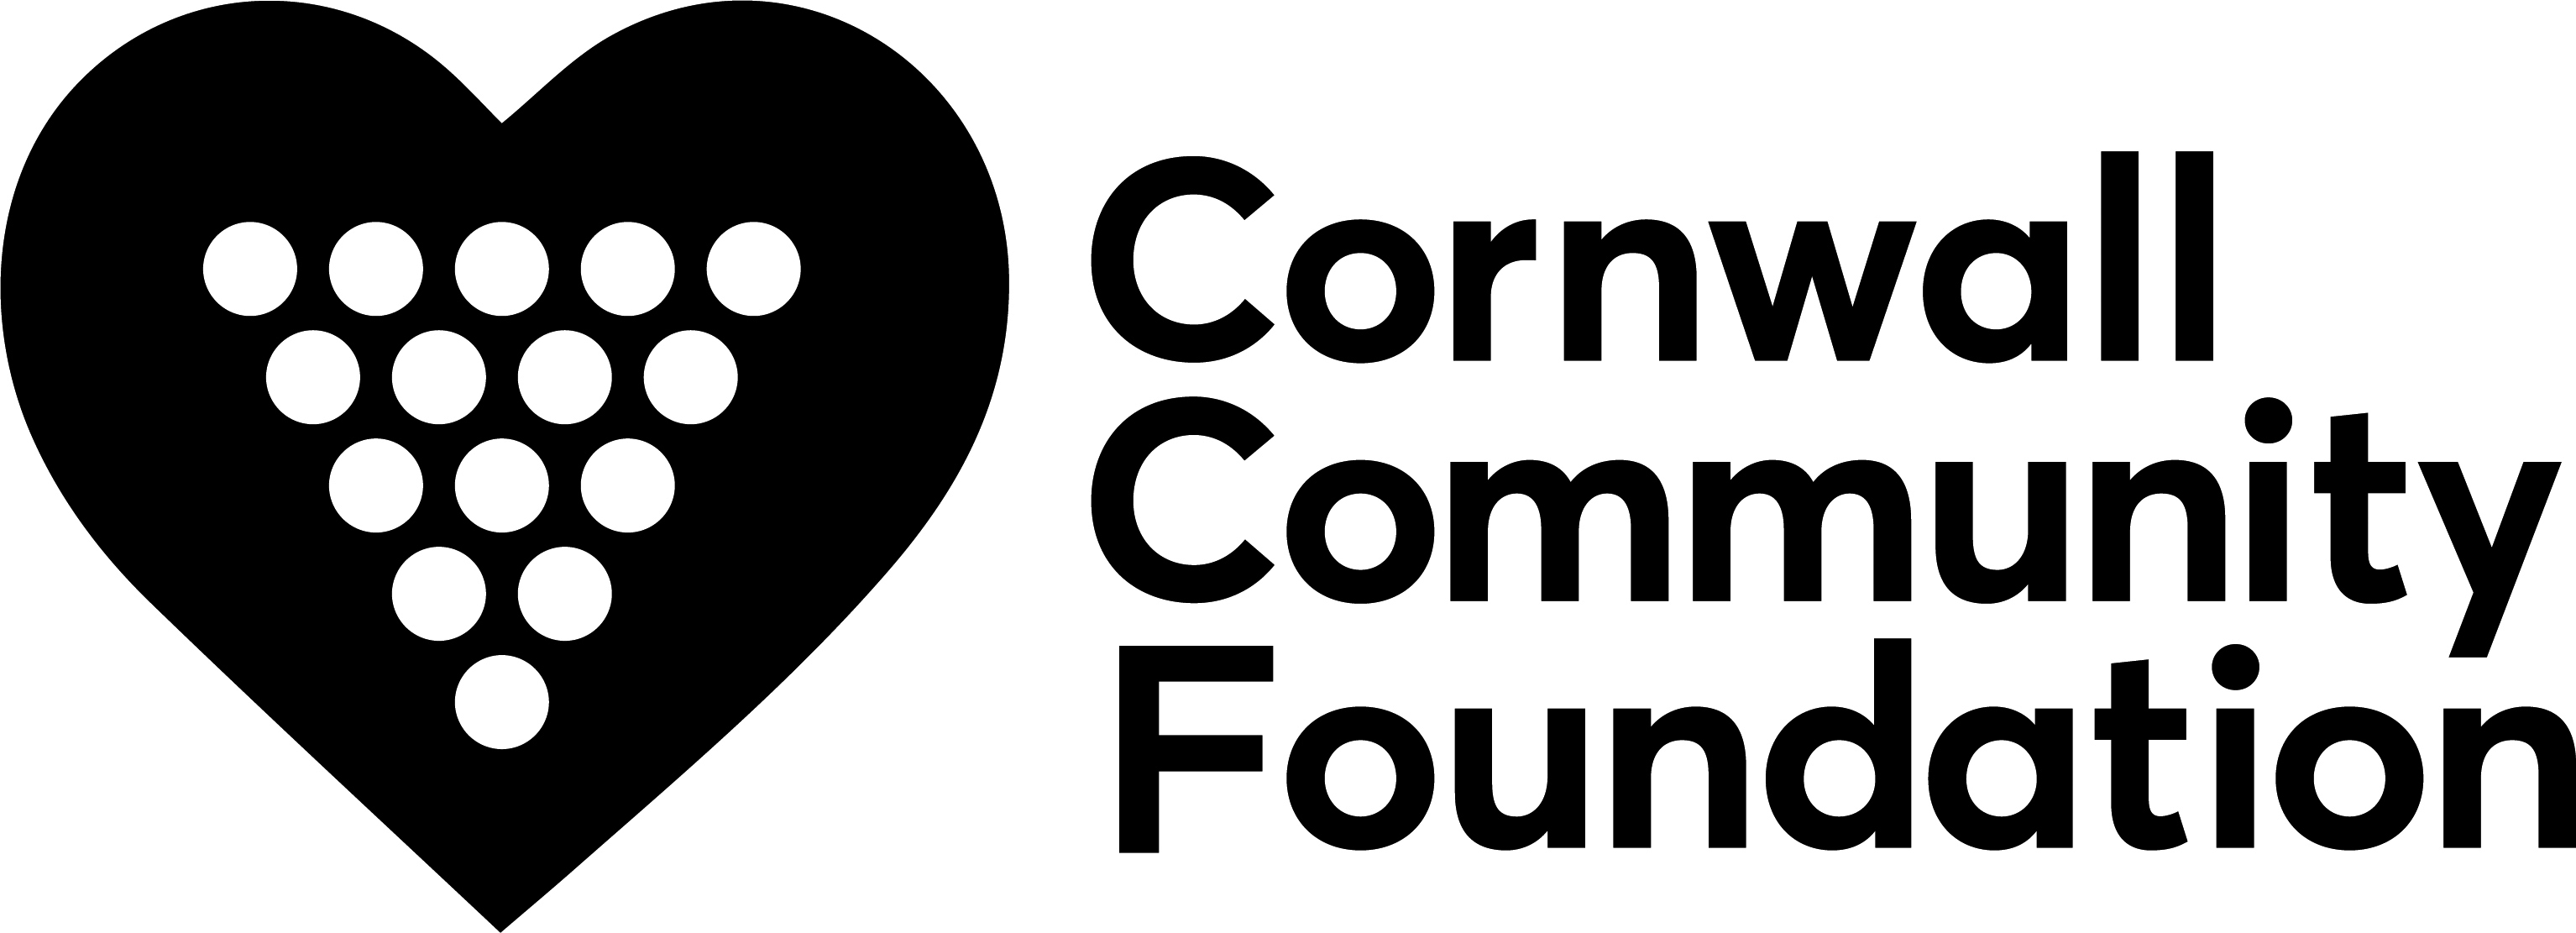 CCF logo v1